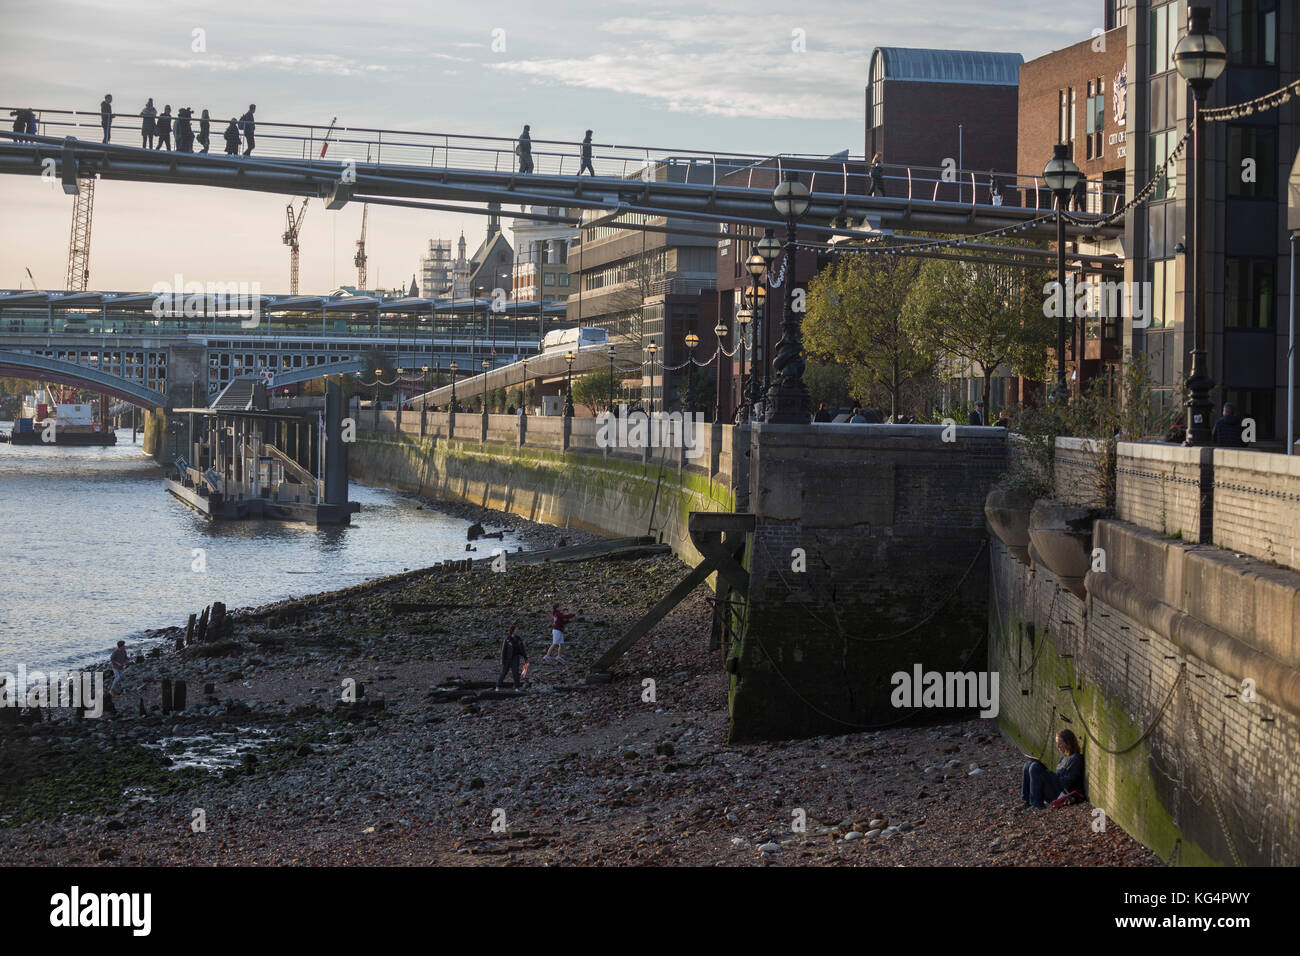 Un artiste est assis contre le mur de la rivière et d'autres jouent sur la boue à marée basse à des piétons sur le pont du millénaire à pied les frais généraux, le 30 octobre 2017, dans la ville de Londres, en Angleterre. Banque D'Images